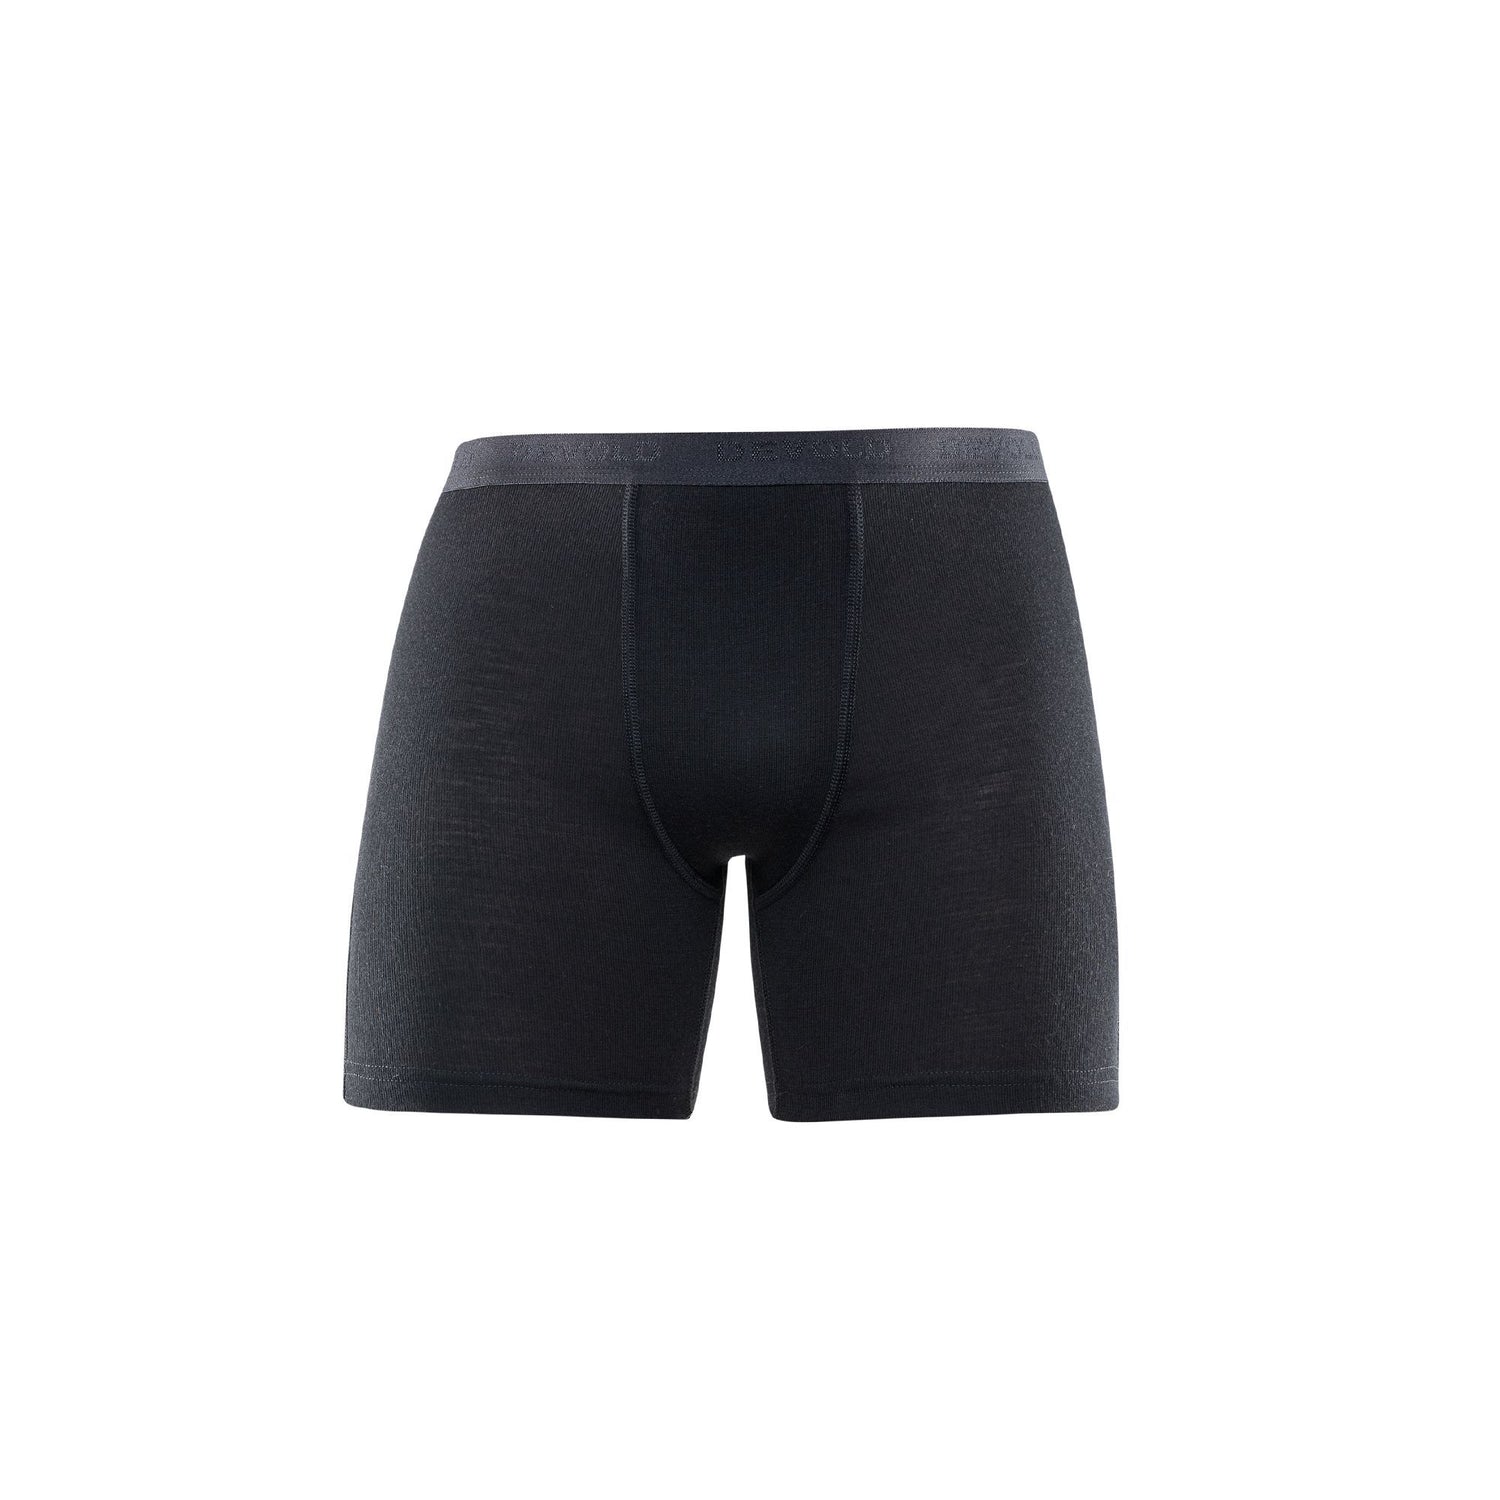 Devold M's Hiking Boxer - 100% Merino Wool Black Underwear